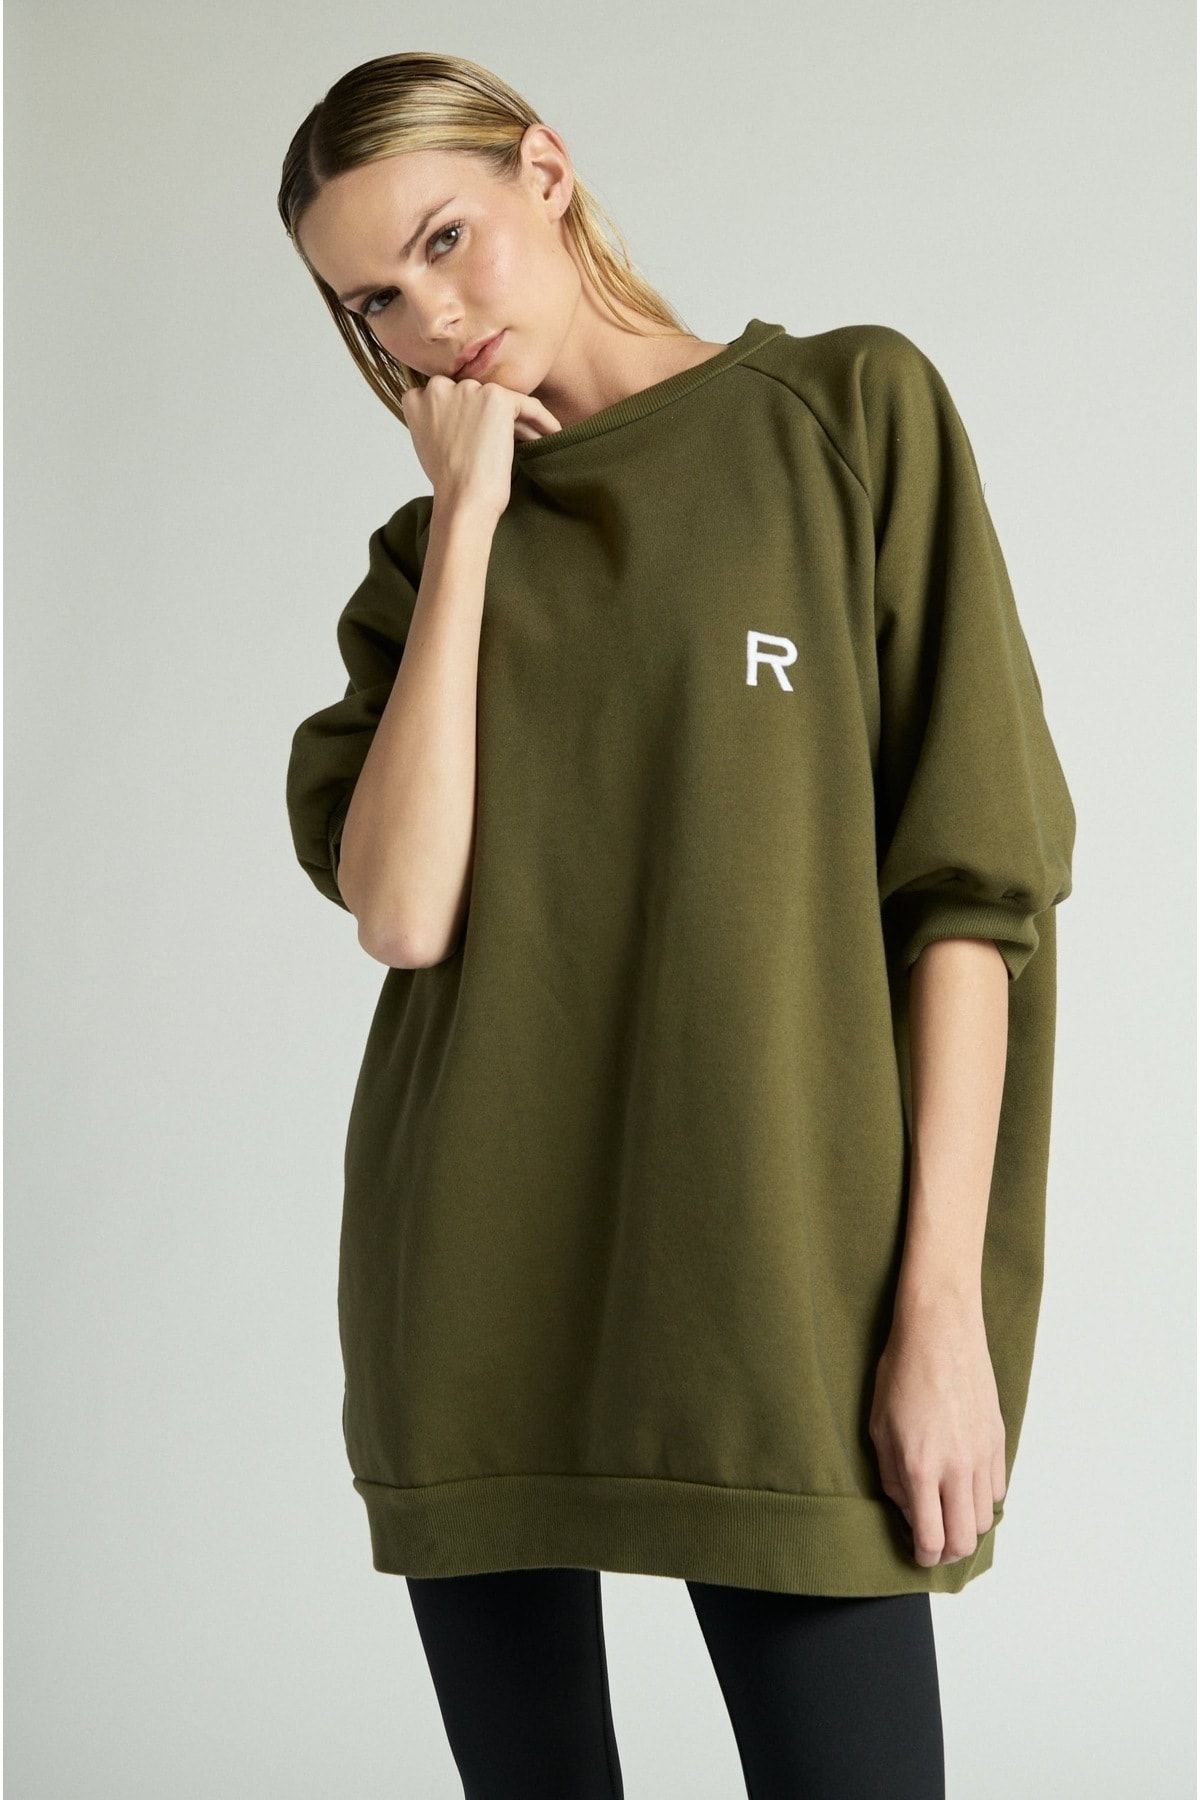 Ragdoll LA Army Green Sweatshirt